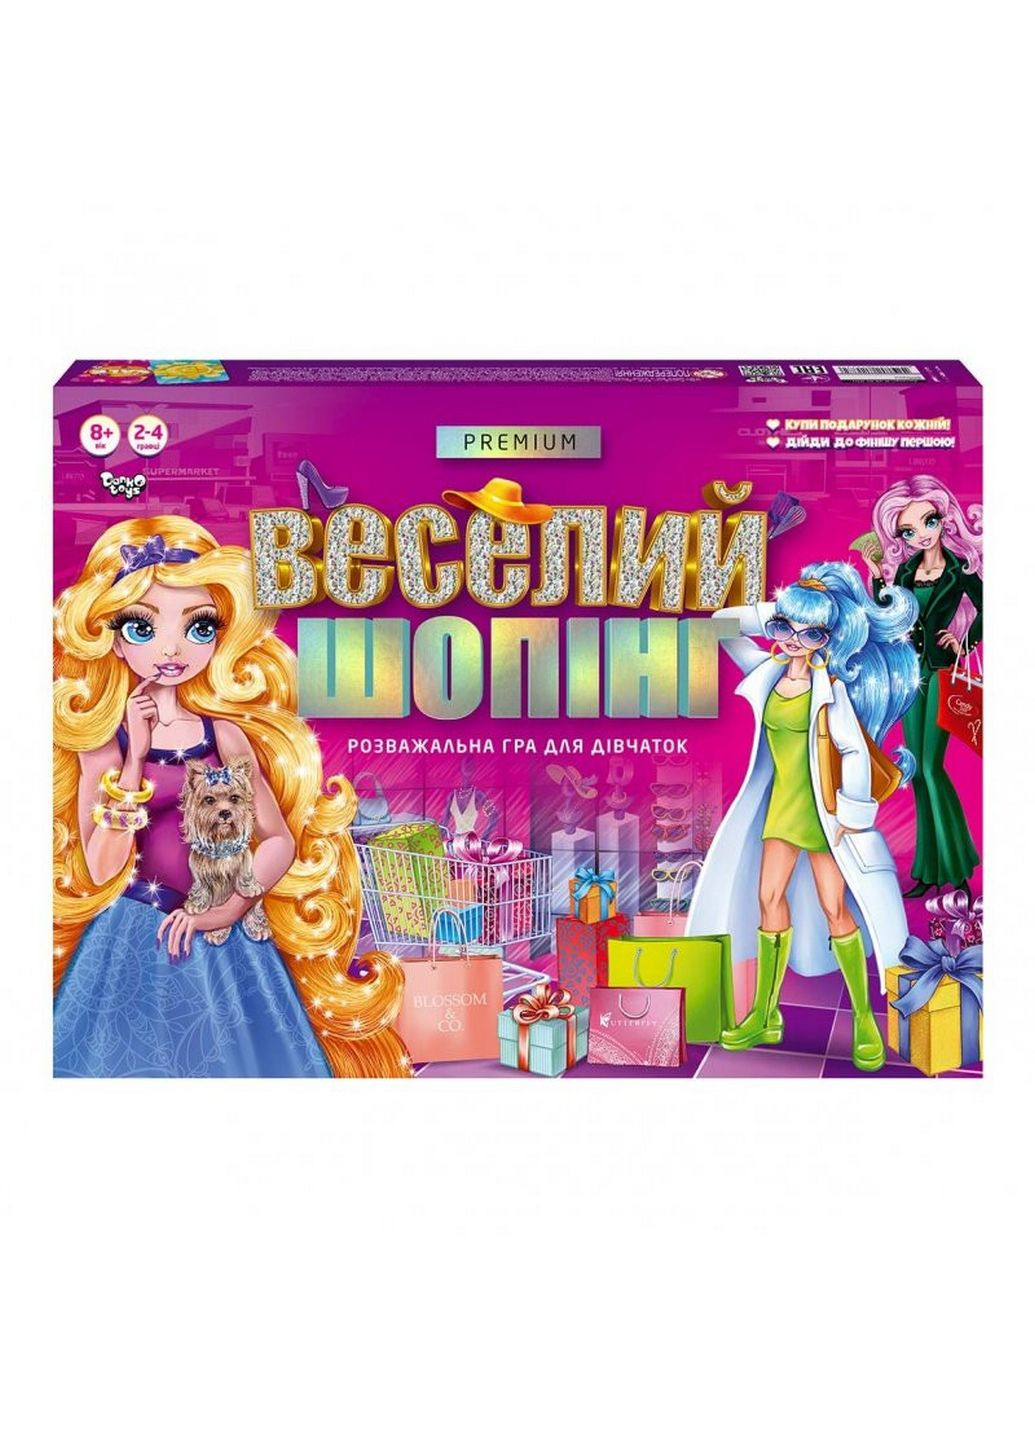 Настольная развлекательная игра "Веселый шопинг Premium" укр От 6 лет Danko Toys (279319934)